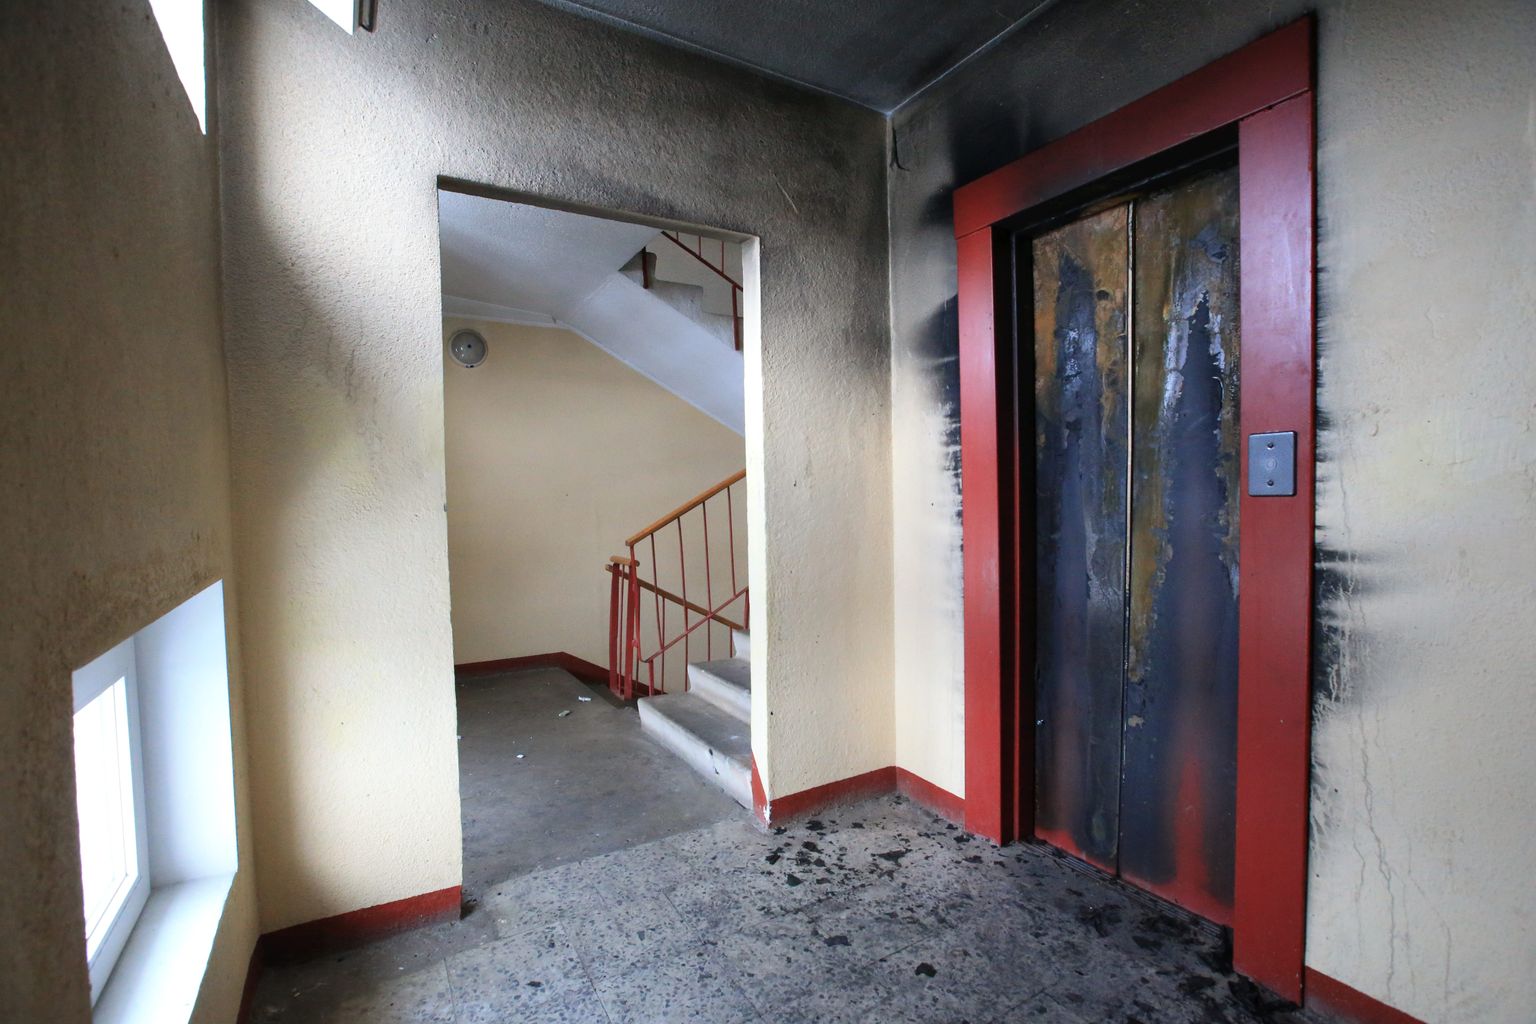 Утром 20 ноября в 5:36 в Центр тревоги поступило сообщение о дыме в подъезде девятиэтажного дома в Тарту. Возгорание произошло в застрявшем между пятом и шестым этажами лифте.